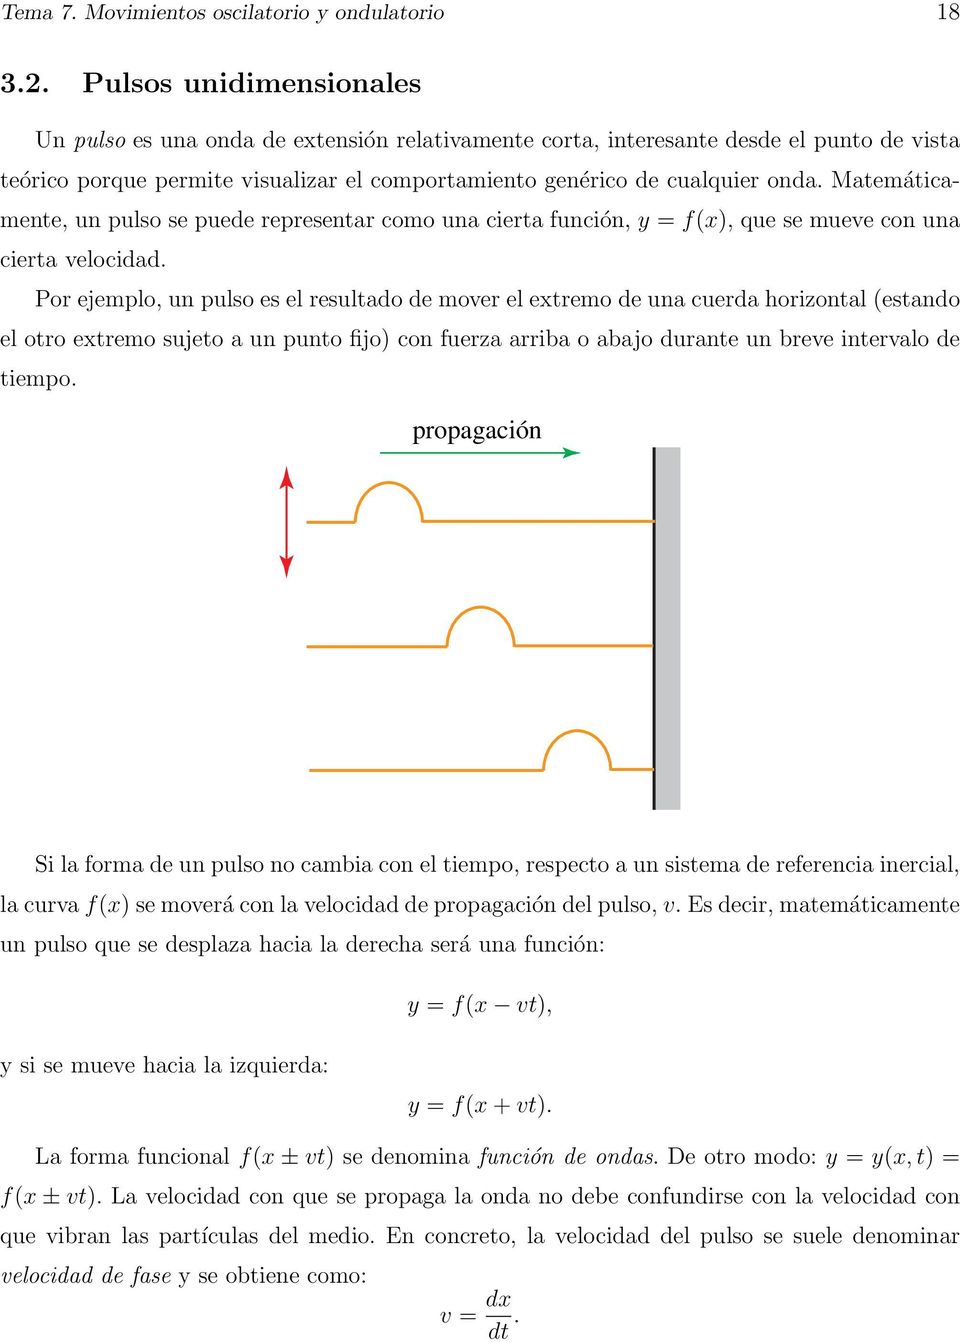 Matemáticamente, un pulso se puede representar como una cierta función, y = f(x), que se mueve con una cierta velocidad.